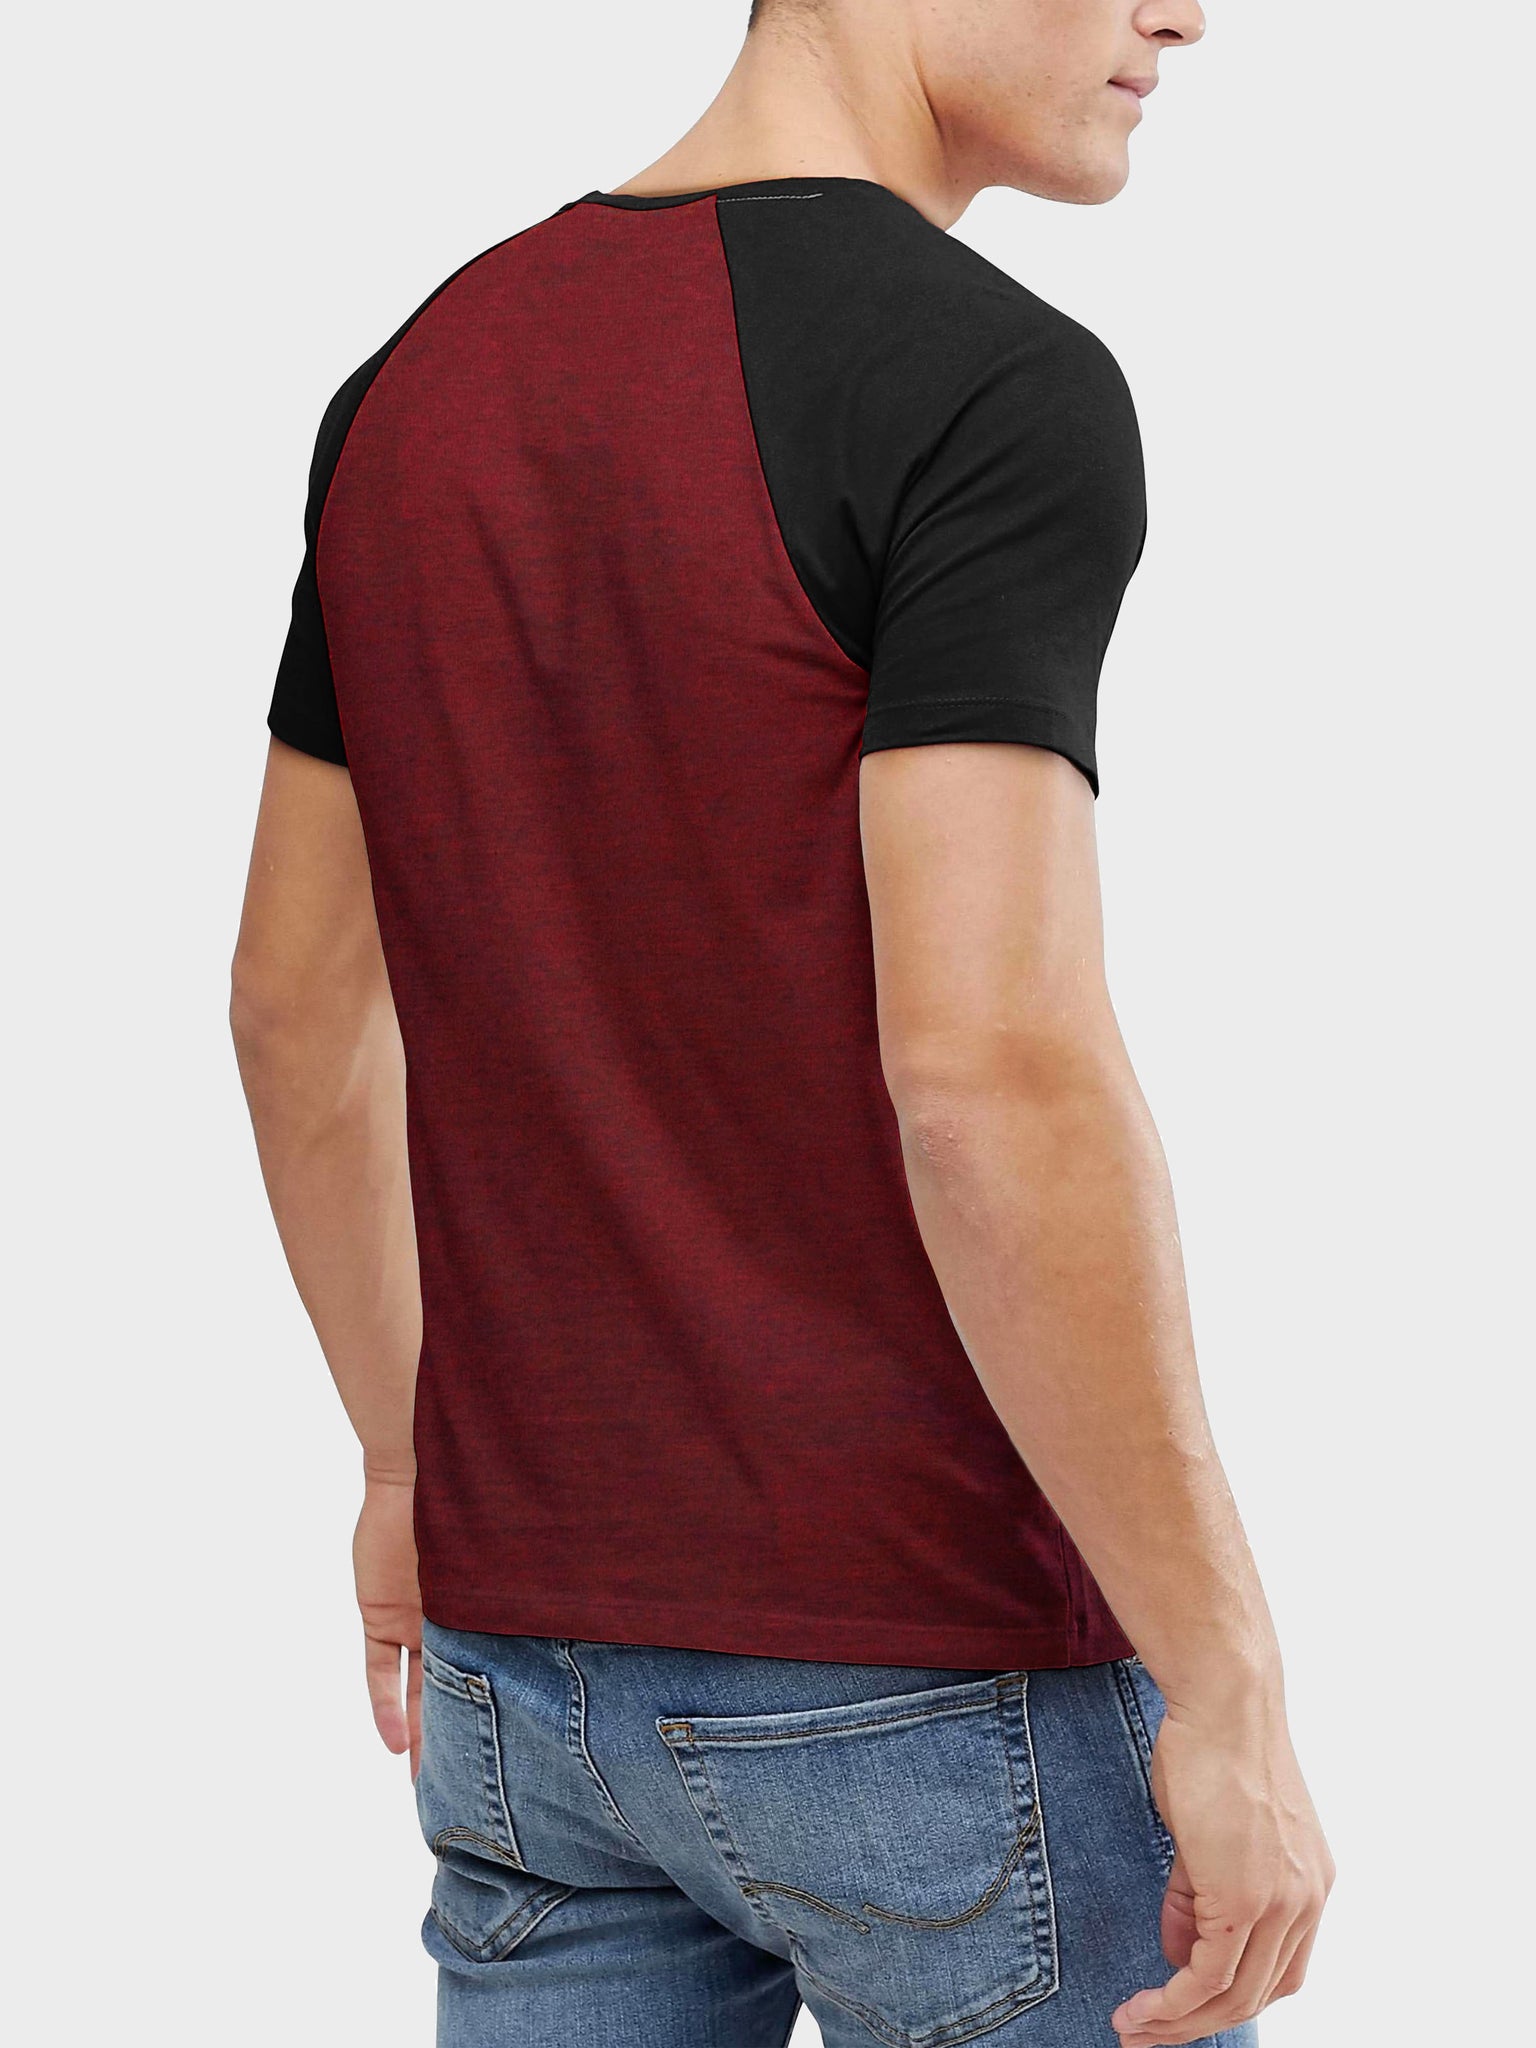  TBô Men's Short Sleeves Performance T-Shirt - Raglan T